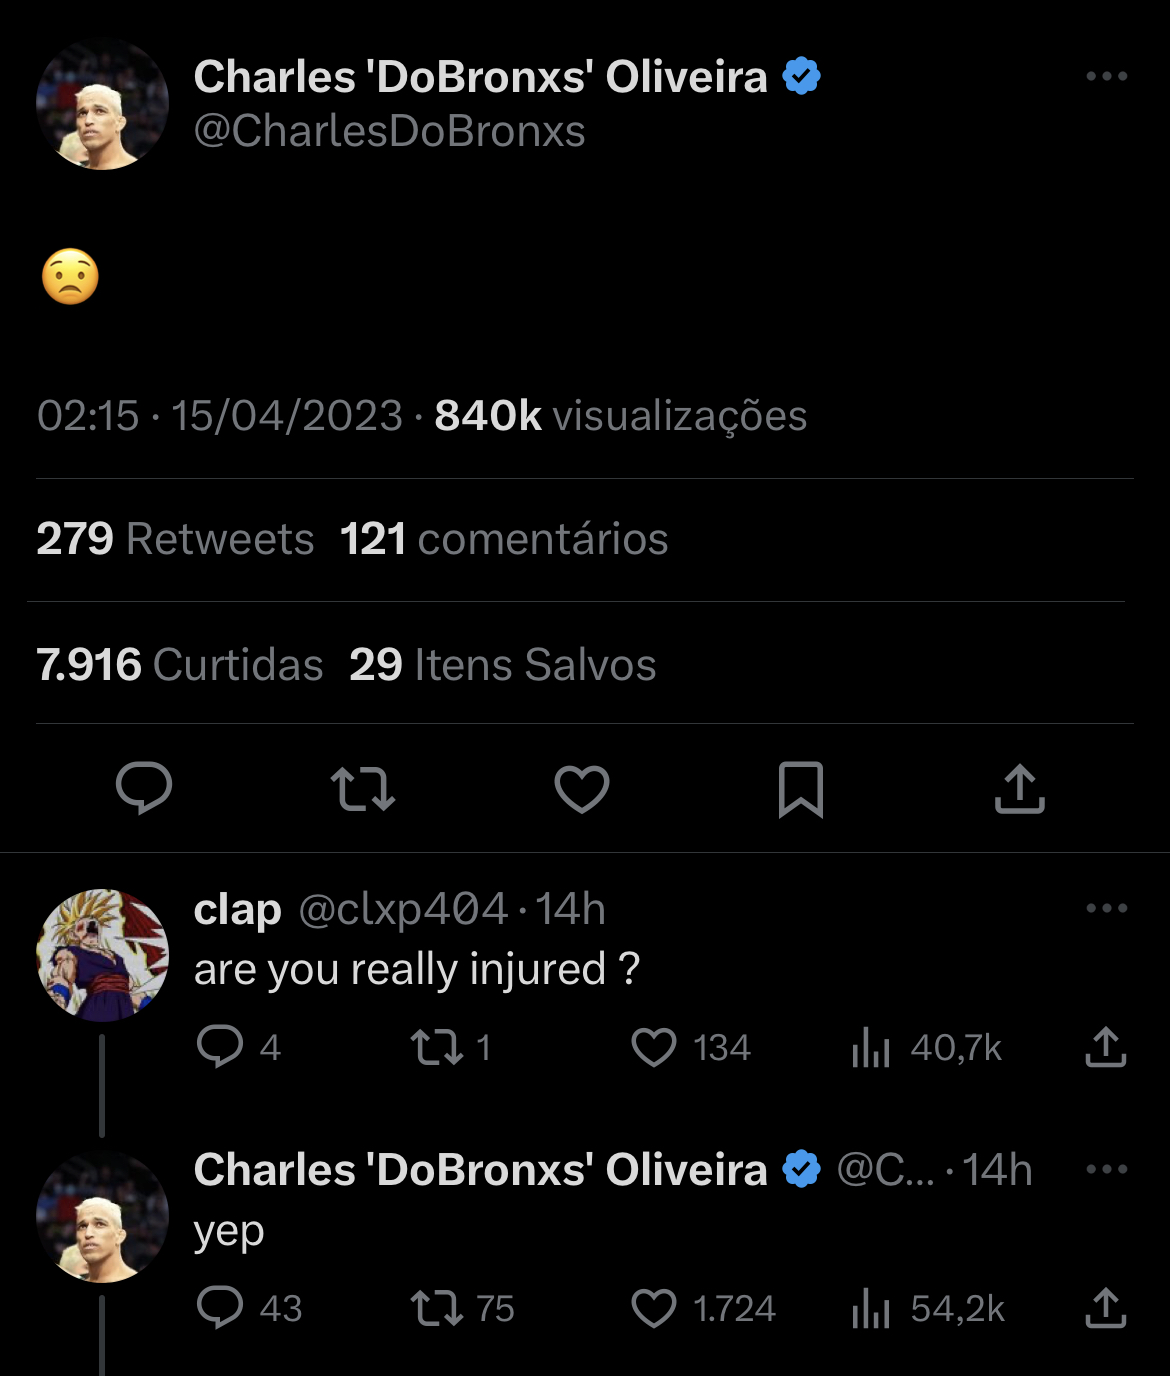 Charles “Do Bronx” responde a um fã em sua rede social e confirma que de fato está lesionado. (Reprodução / Twitter: @CharlesDoBronxs) 